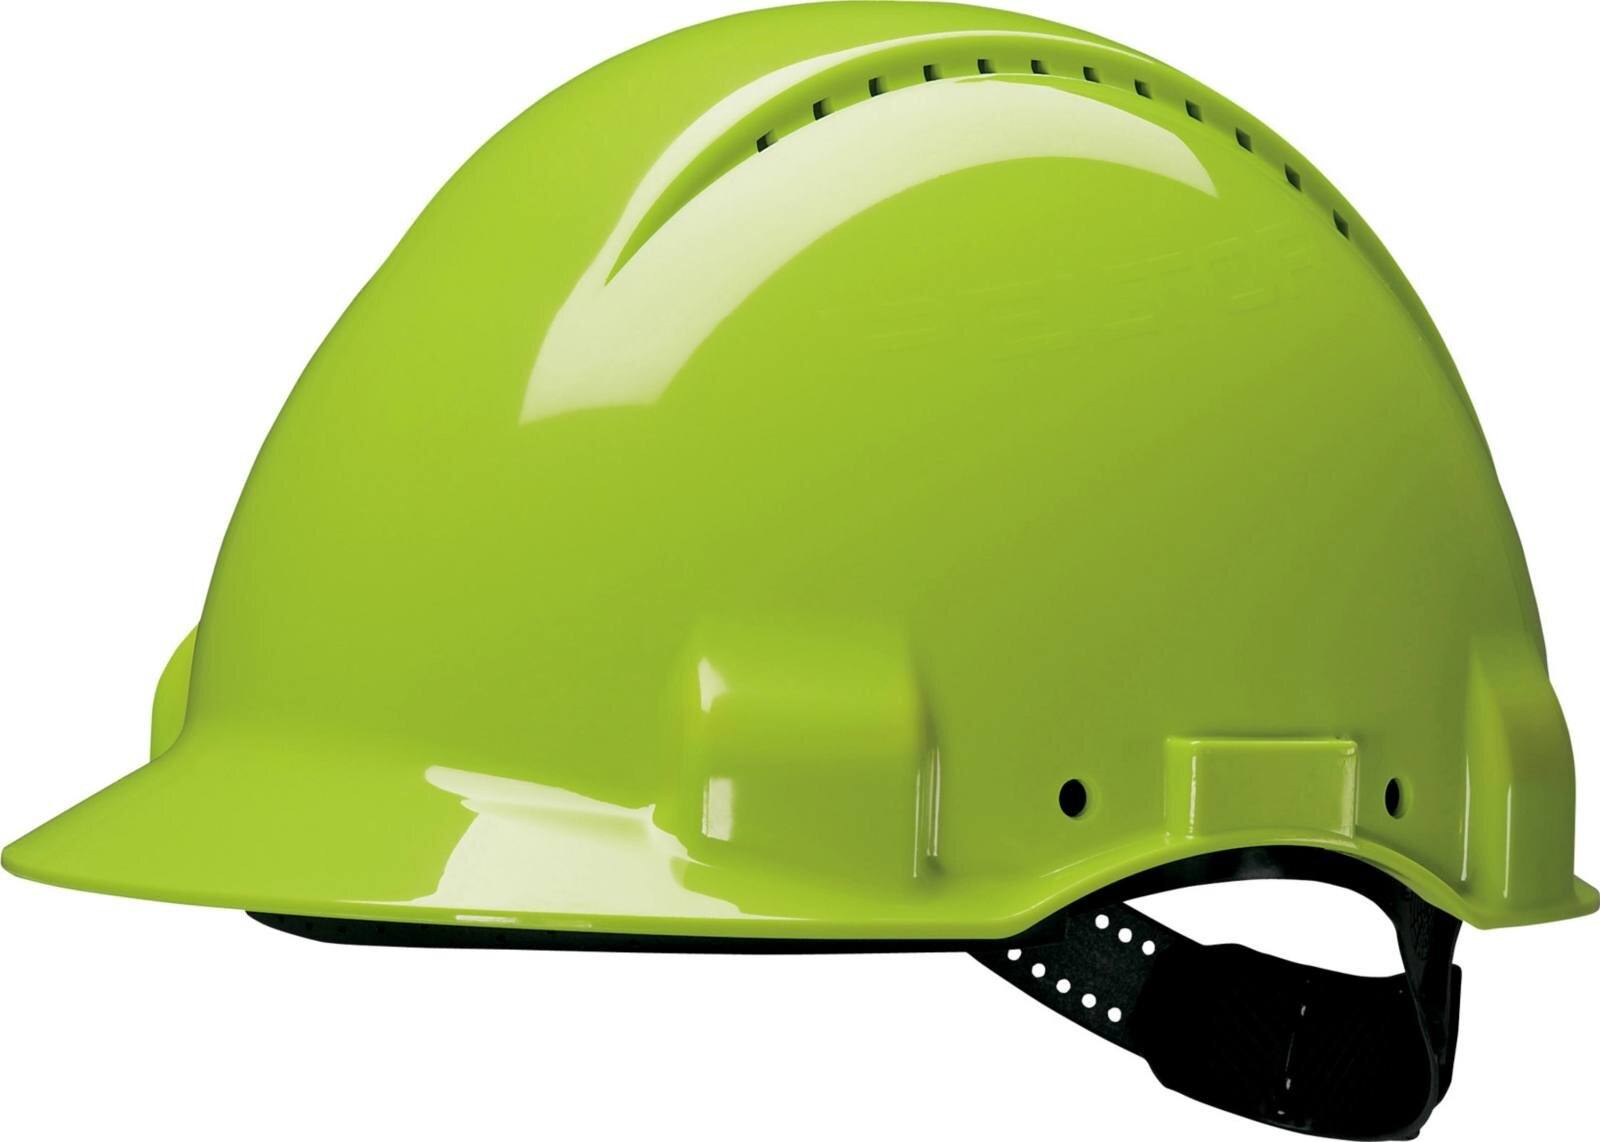 elmetto di sicurezza 3M G3000 G30CUV di colore verde neon, ventilato, con uvicatore, pinlock e fascia antisudore in plastica